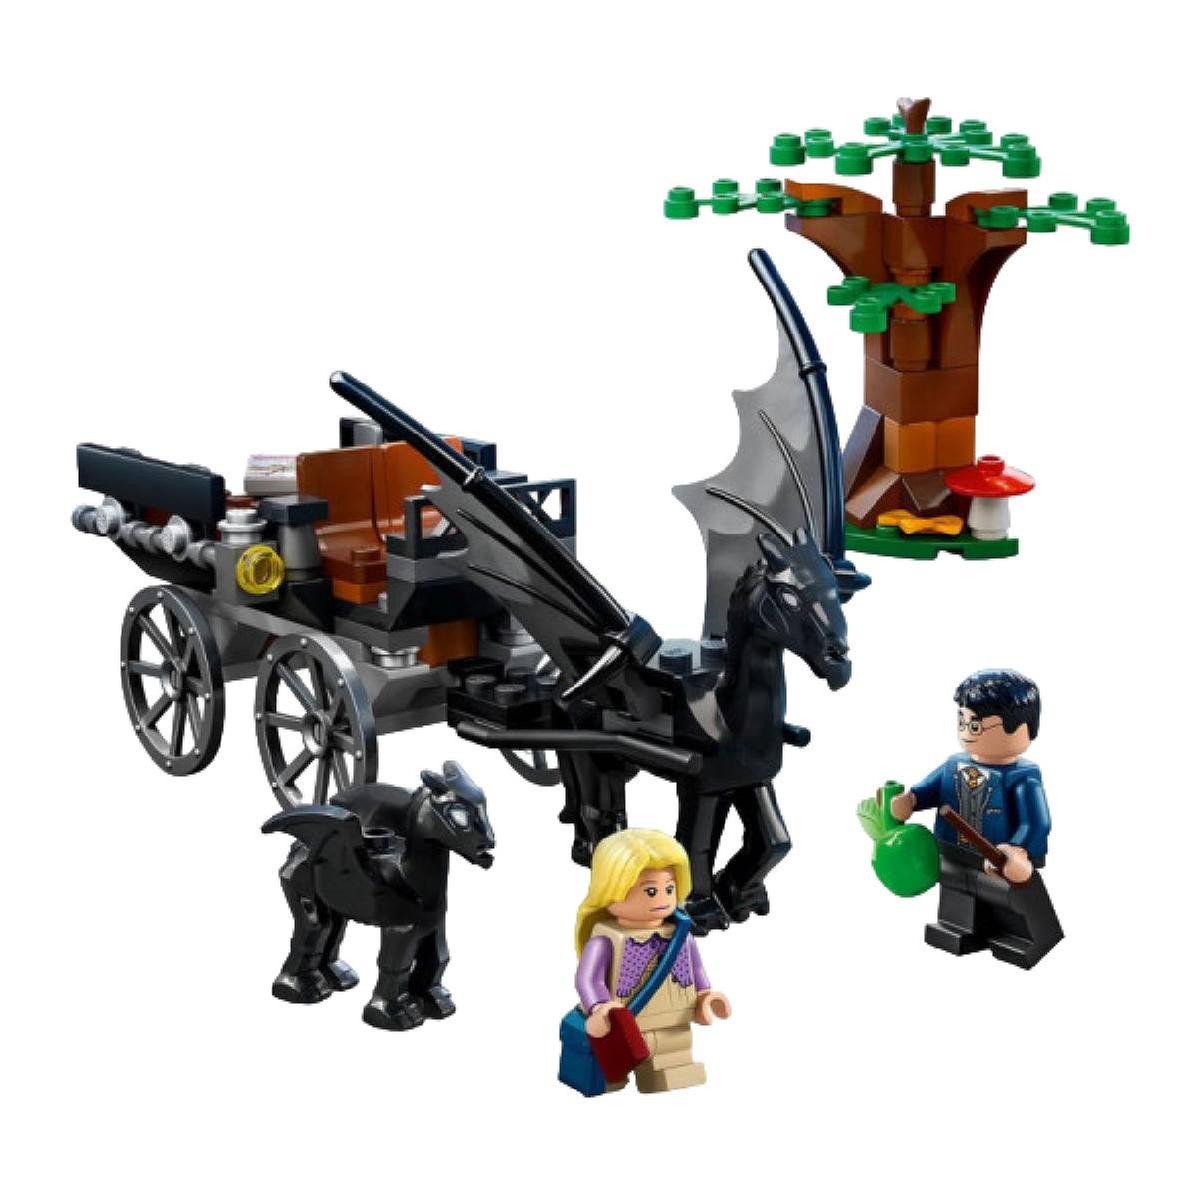 Legos Harry Potter: personagens, cenas, criaturas